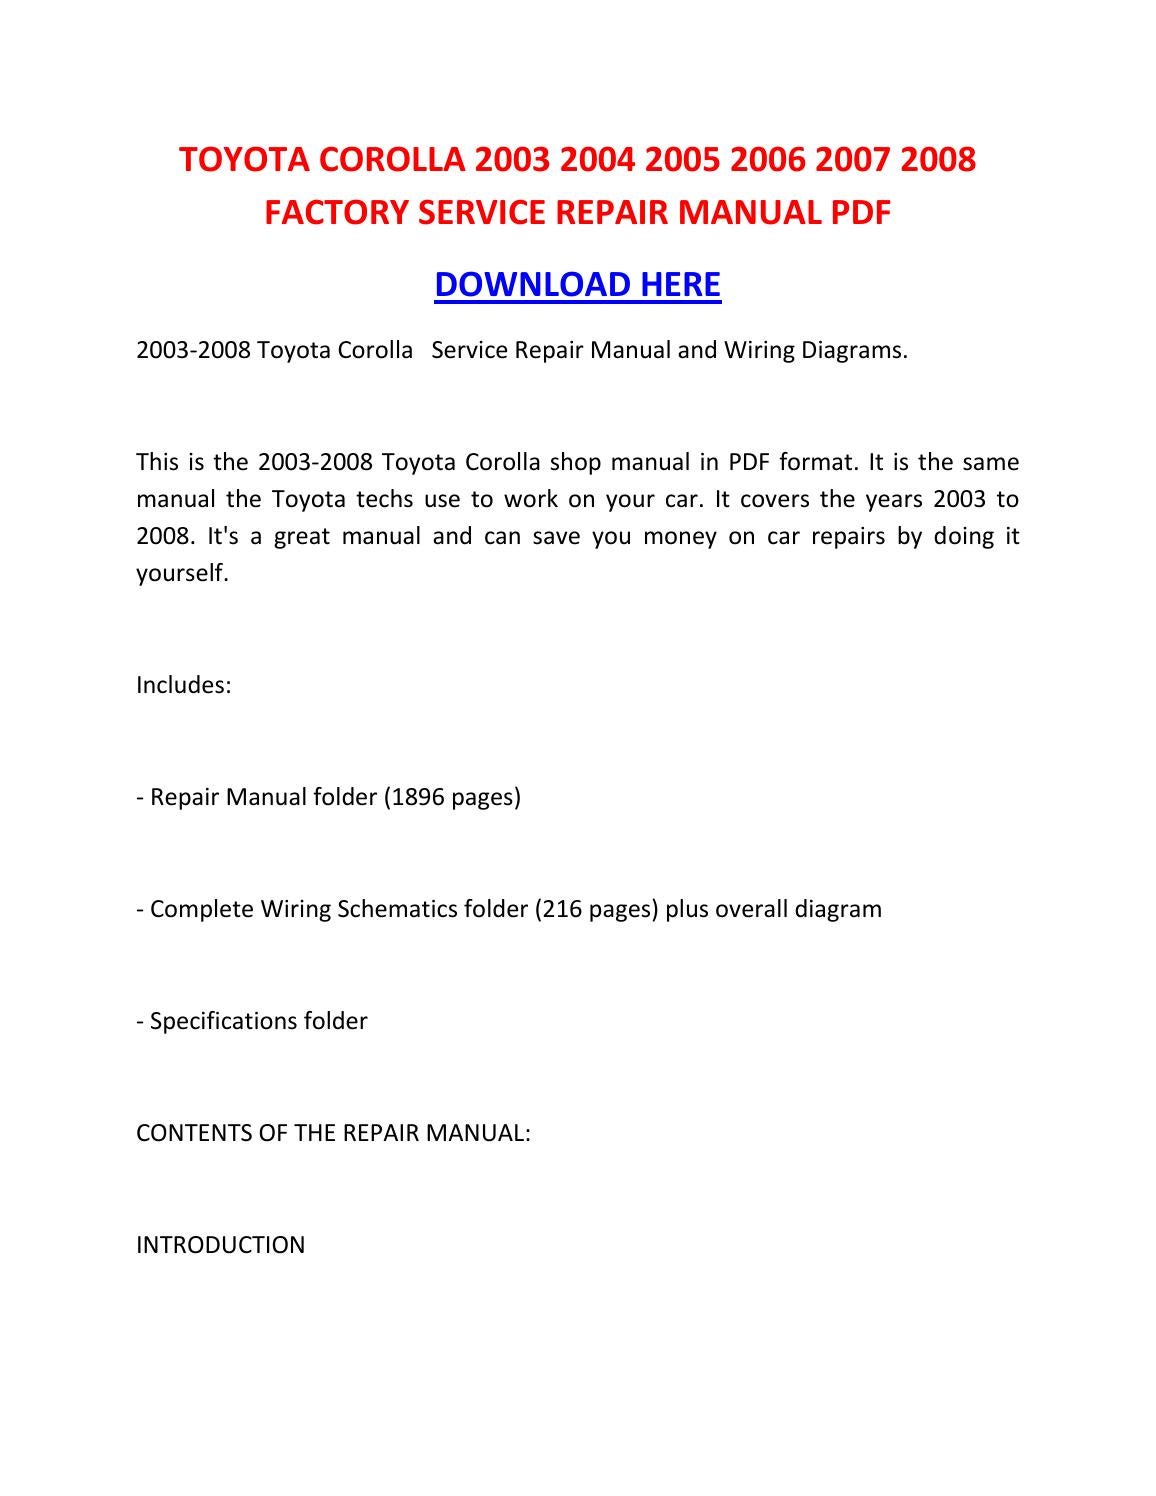 2004 toyota corolla repair manual pdf